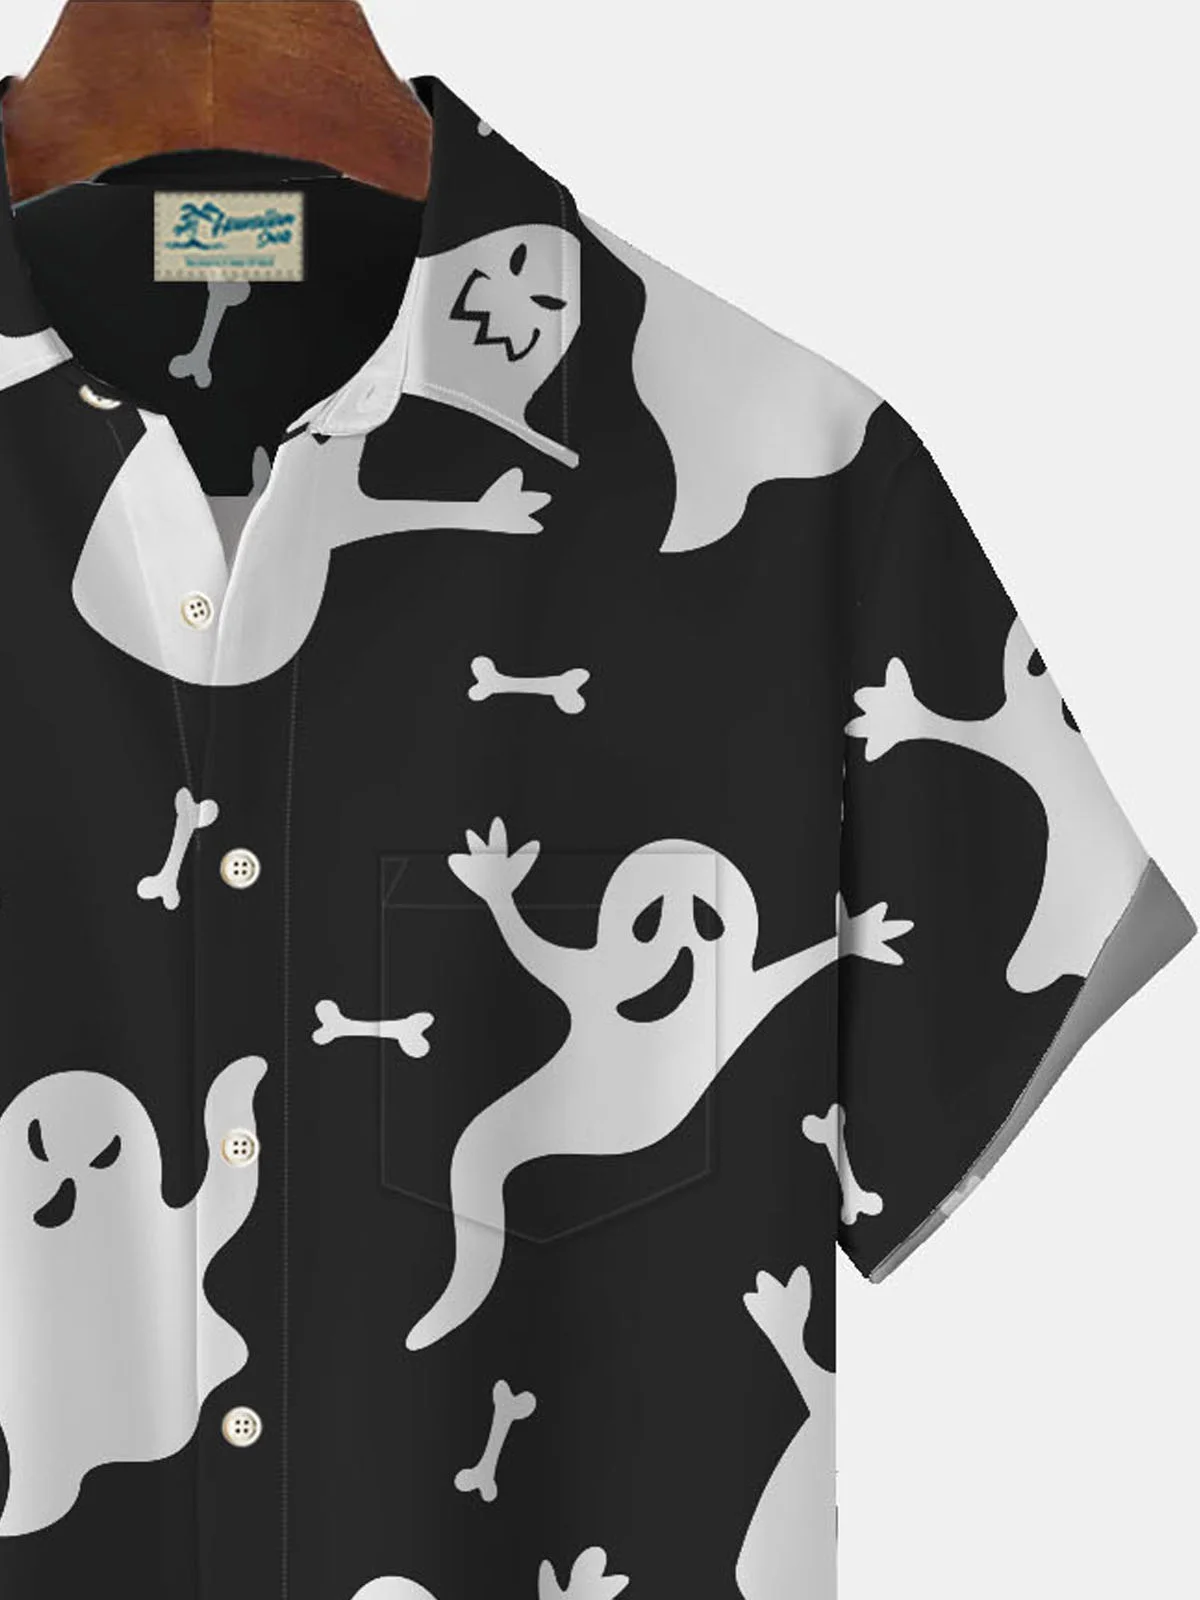 Royaura Halloween Ghost Print Men's Button Pocket Short Sleeve Shirt